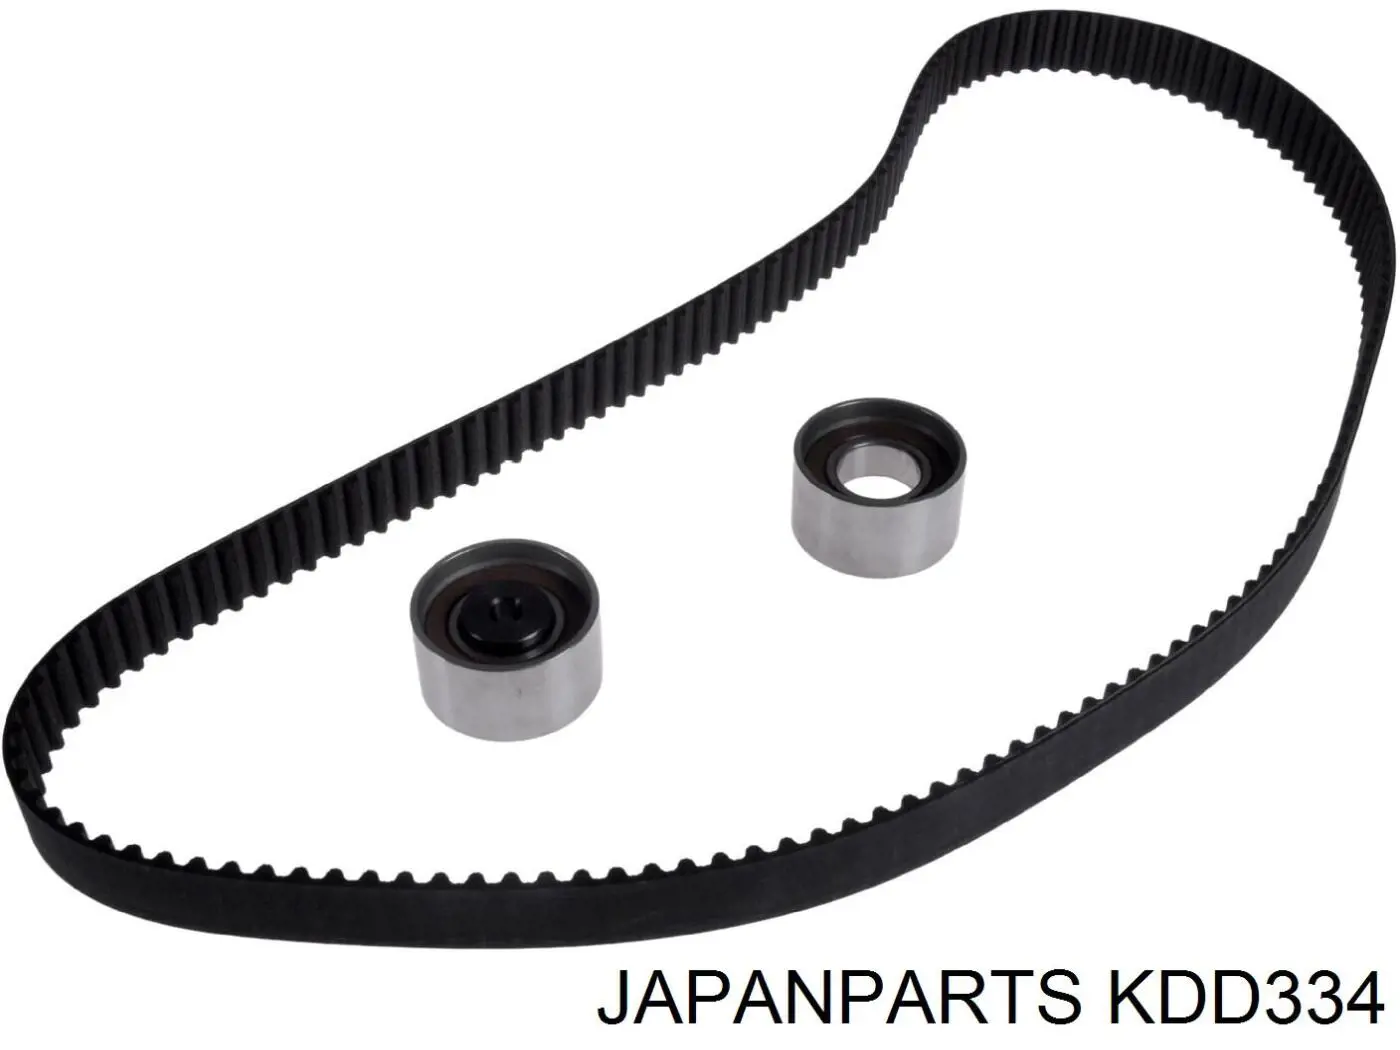 KDD334 Japan Parts kit de correa de distribución